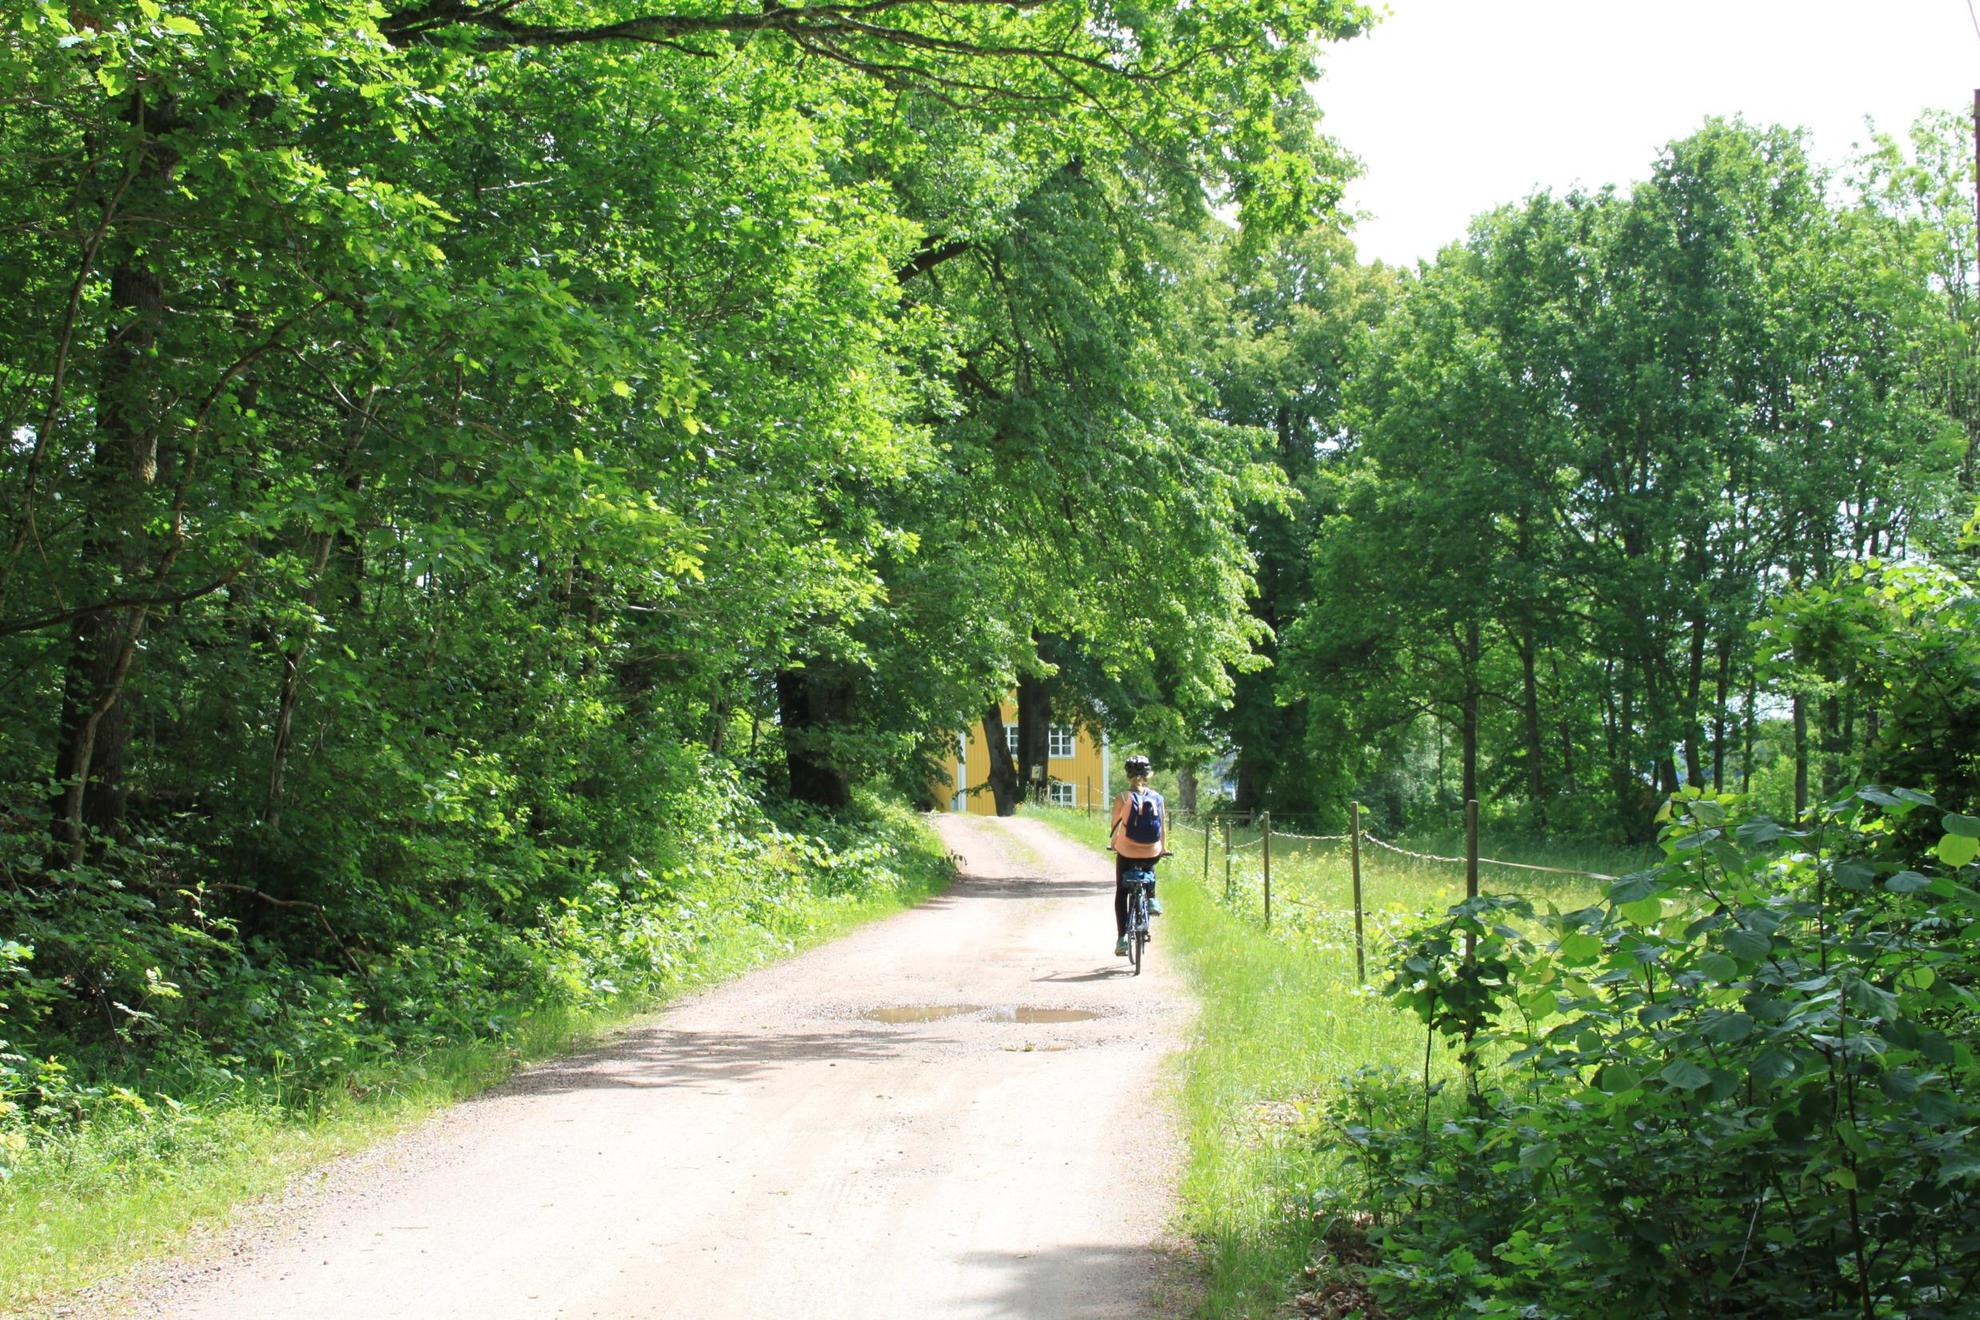 Een persoon met een rugzak fietst op een pad met bos aan de zijkanten. Aan het einde van de weg zie je een glimp van een geel huis.